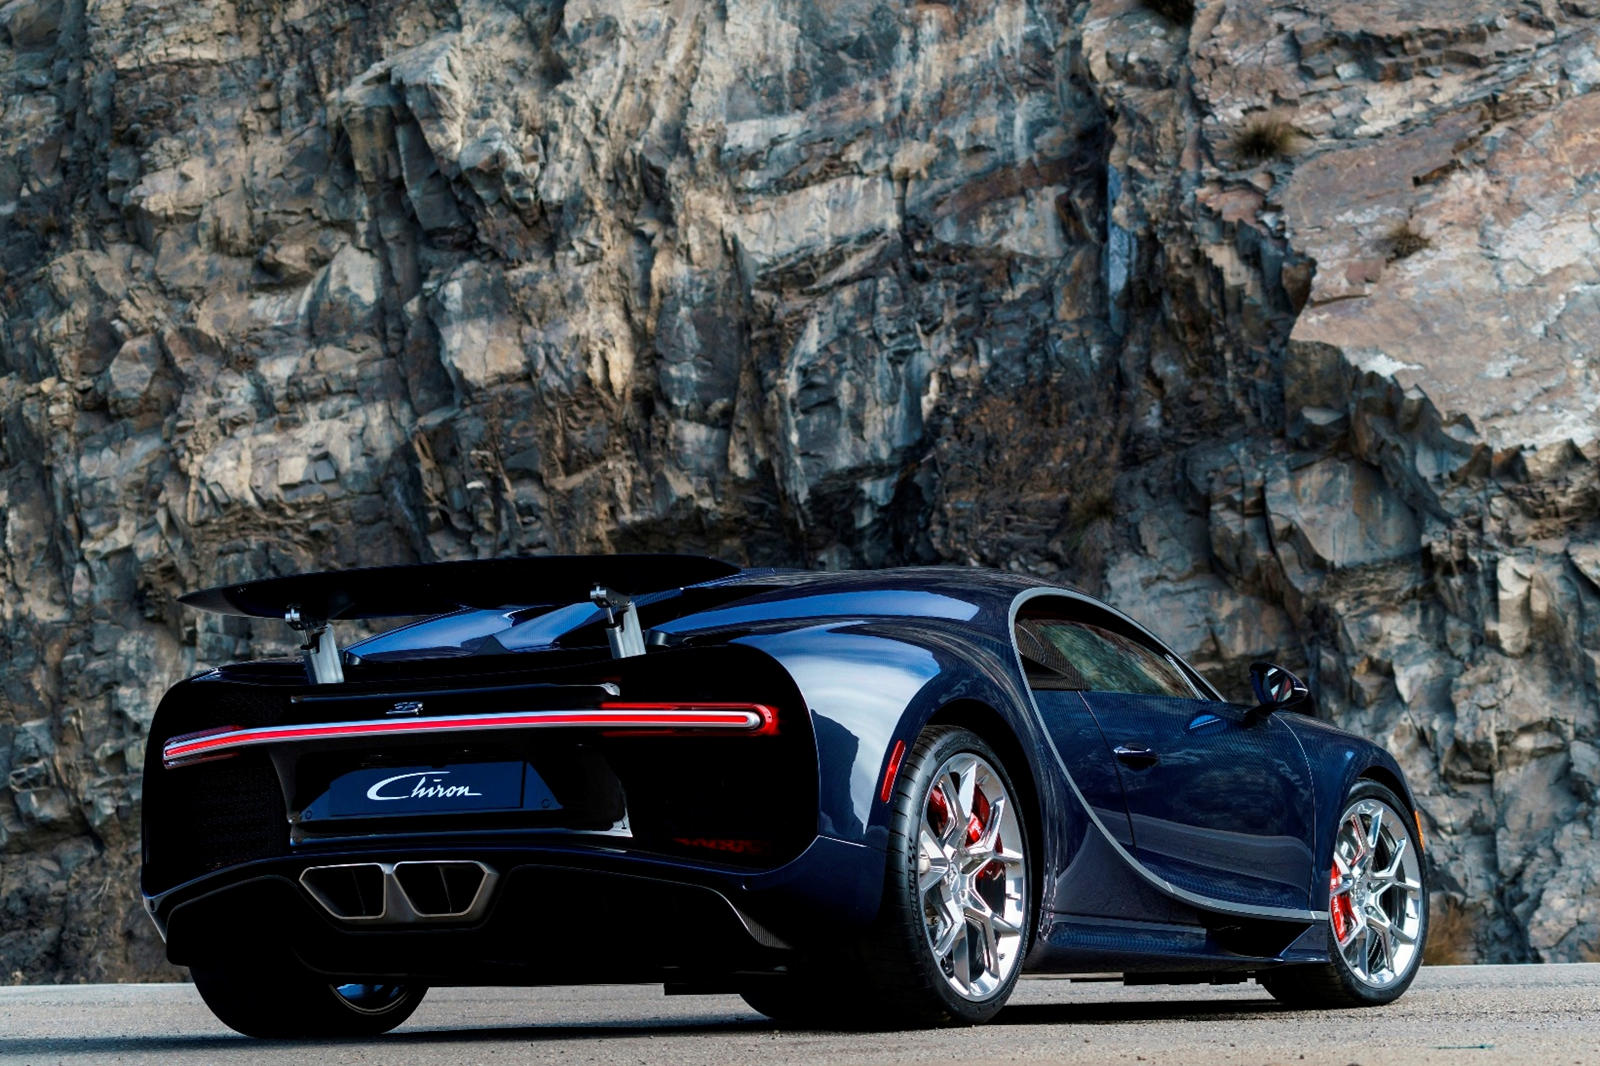 Когда кто-то говорит, что Bugatti Chiron «наведет жару», это обычно связано с сенсационными характеристиками гиперкара и не читается буквально. К сожалению, этот красно-черный Chiron стал горячим по всем неправильным причинам после того, как он сильн